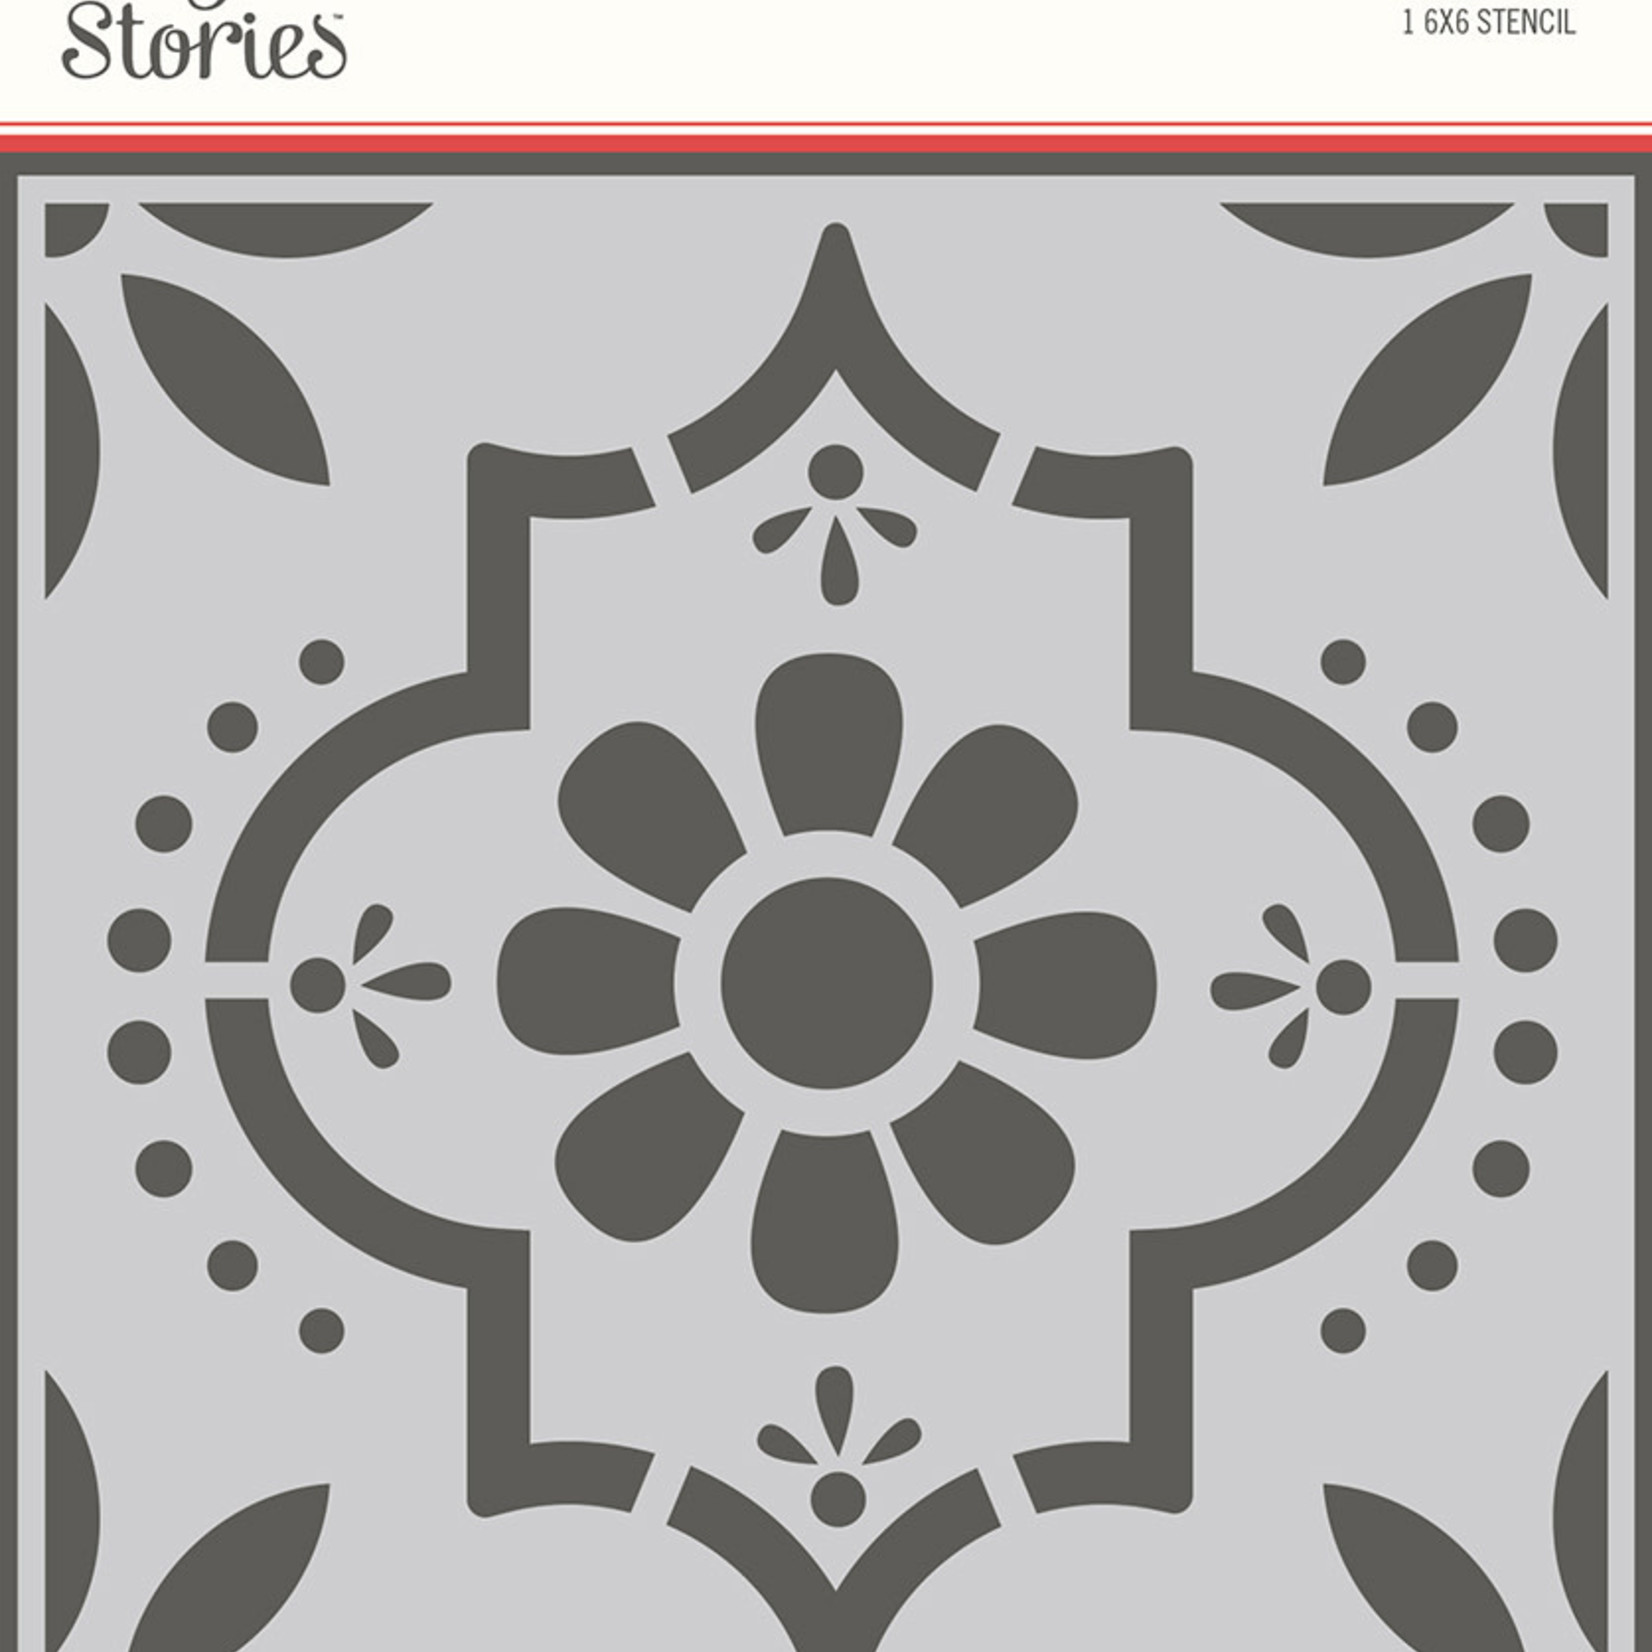 Simple Stories Apron Strings: 6x6 Stencil- Vintage Tile